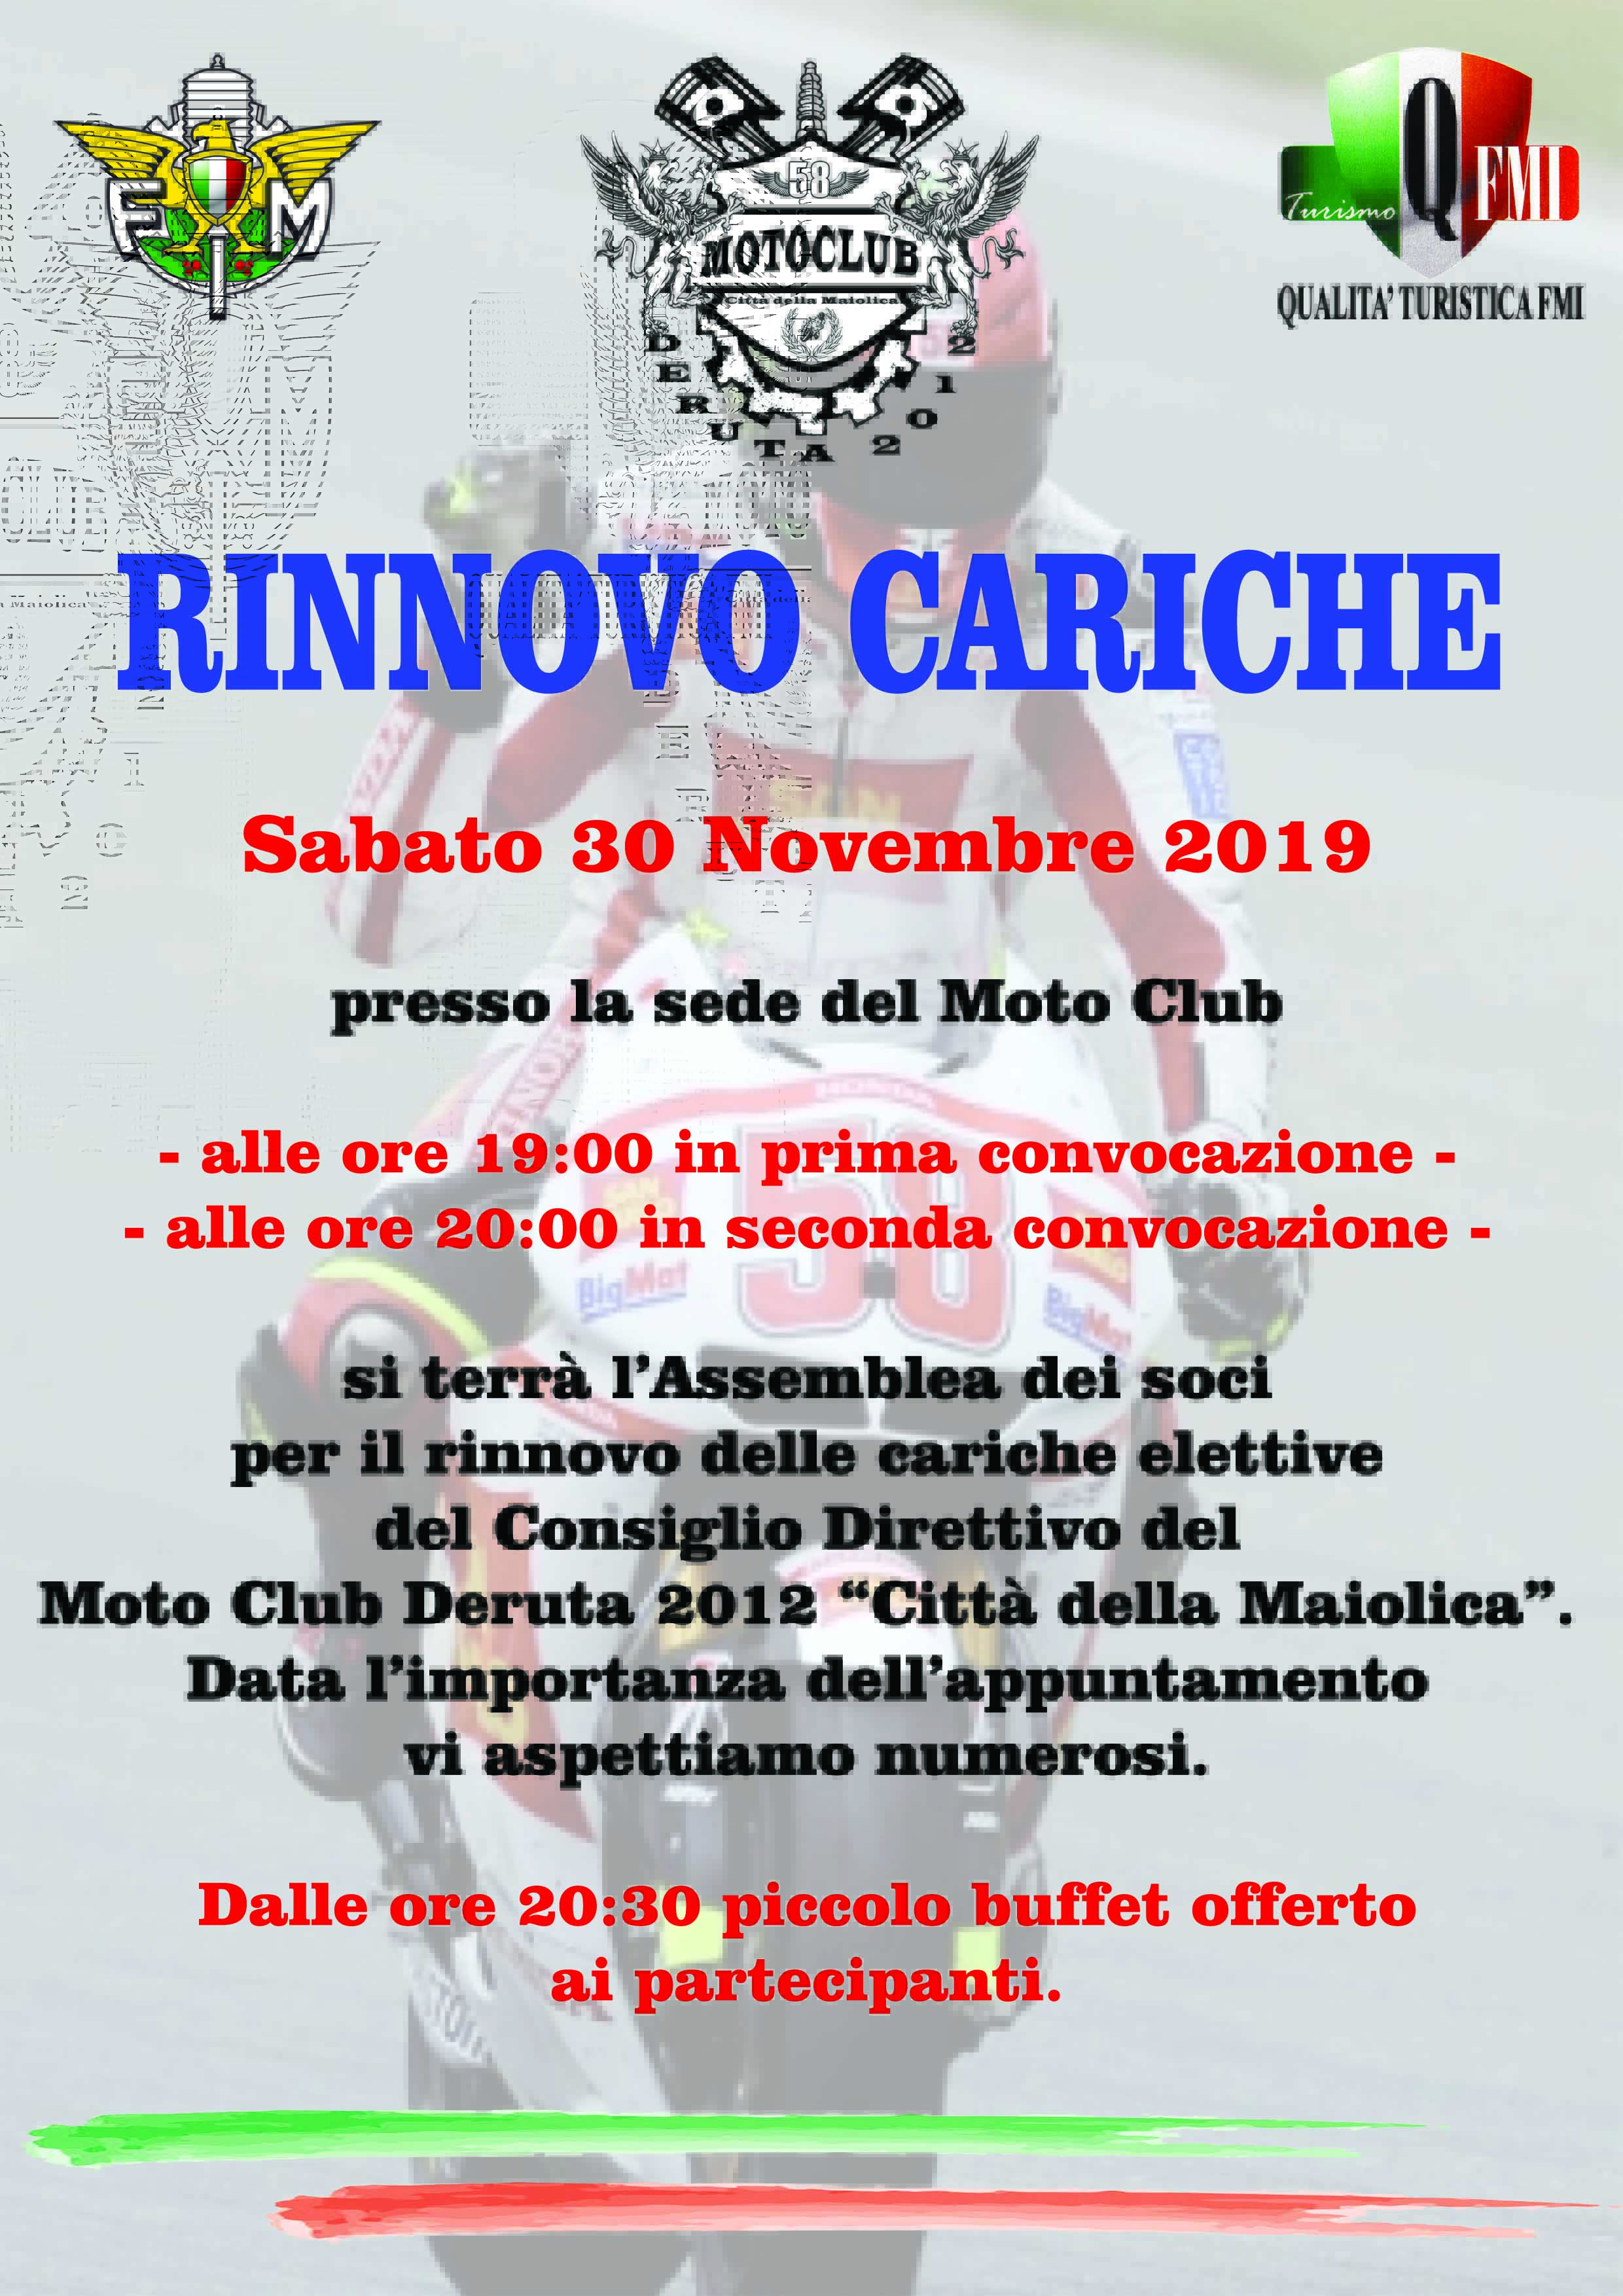 30 Novembre – Rinnovo Cariche Moto Club